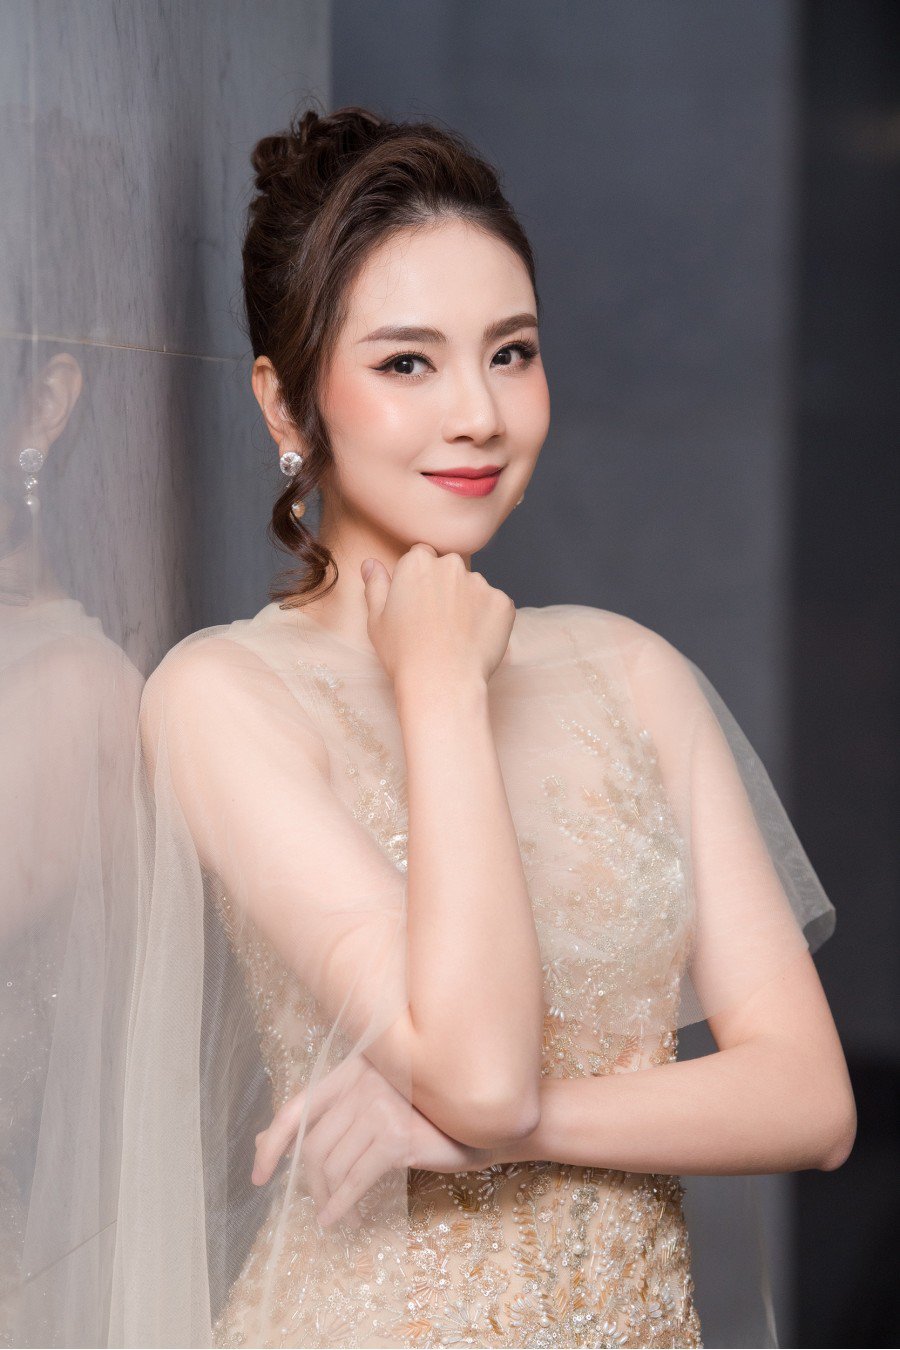 MC Mai Ngọc nghiến răng diện outfit hở bạo nhất nhì sự nghiệp, tiết lộ sự thật đau thương đằng sau tấm váy đẹp - Ảnh 6.